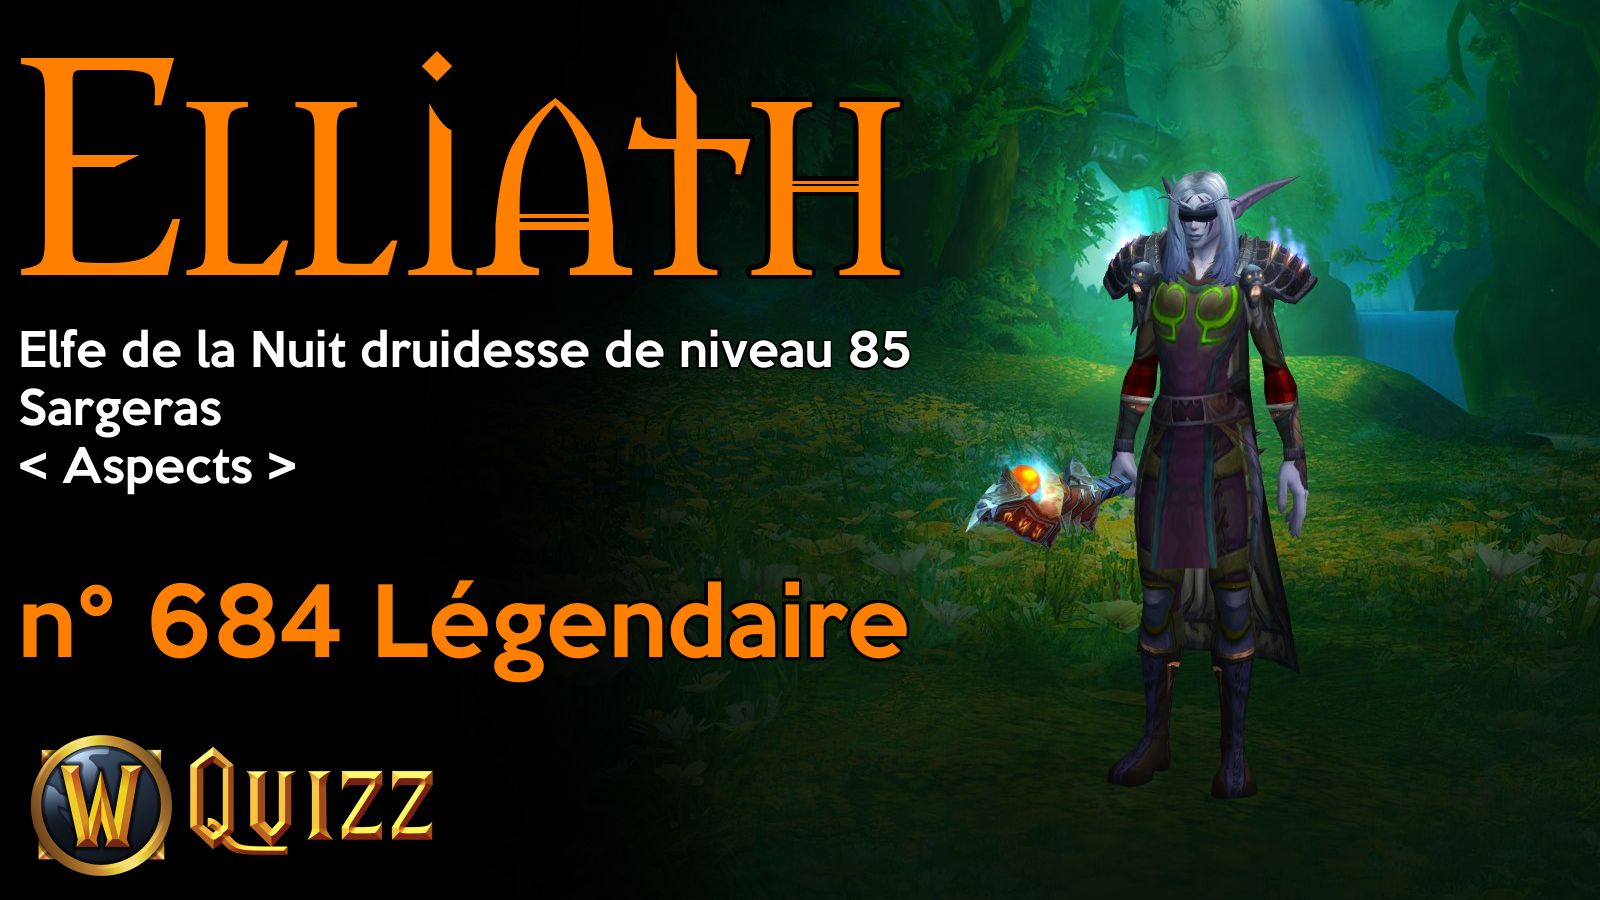 Elliath, Elfe de la Nuit druidesse de niveau 85, Sargeras